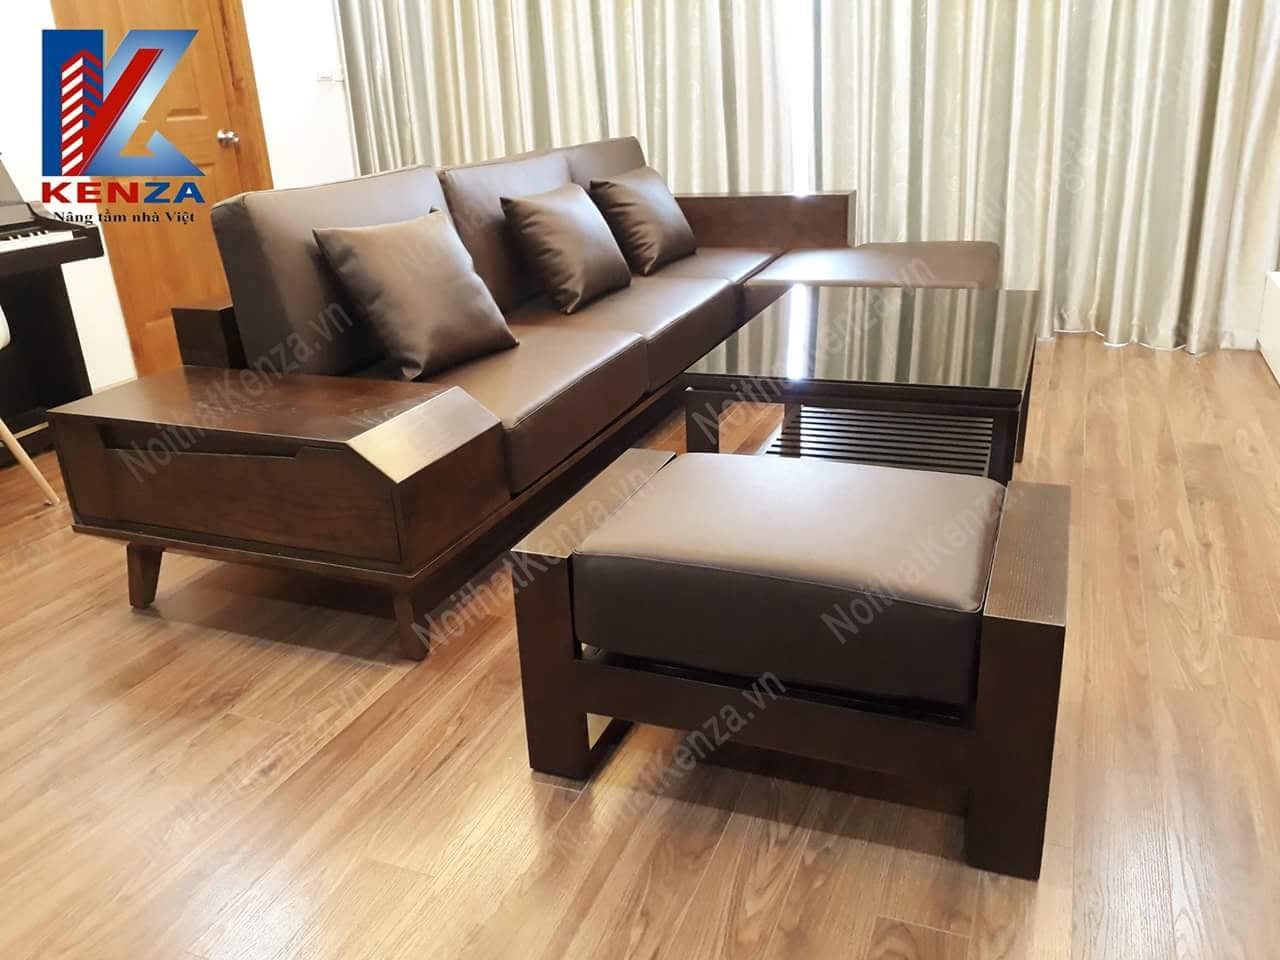 sofa gỗ bàn giao tại nhà khách hàng